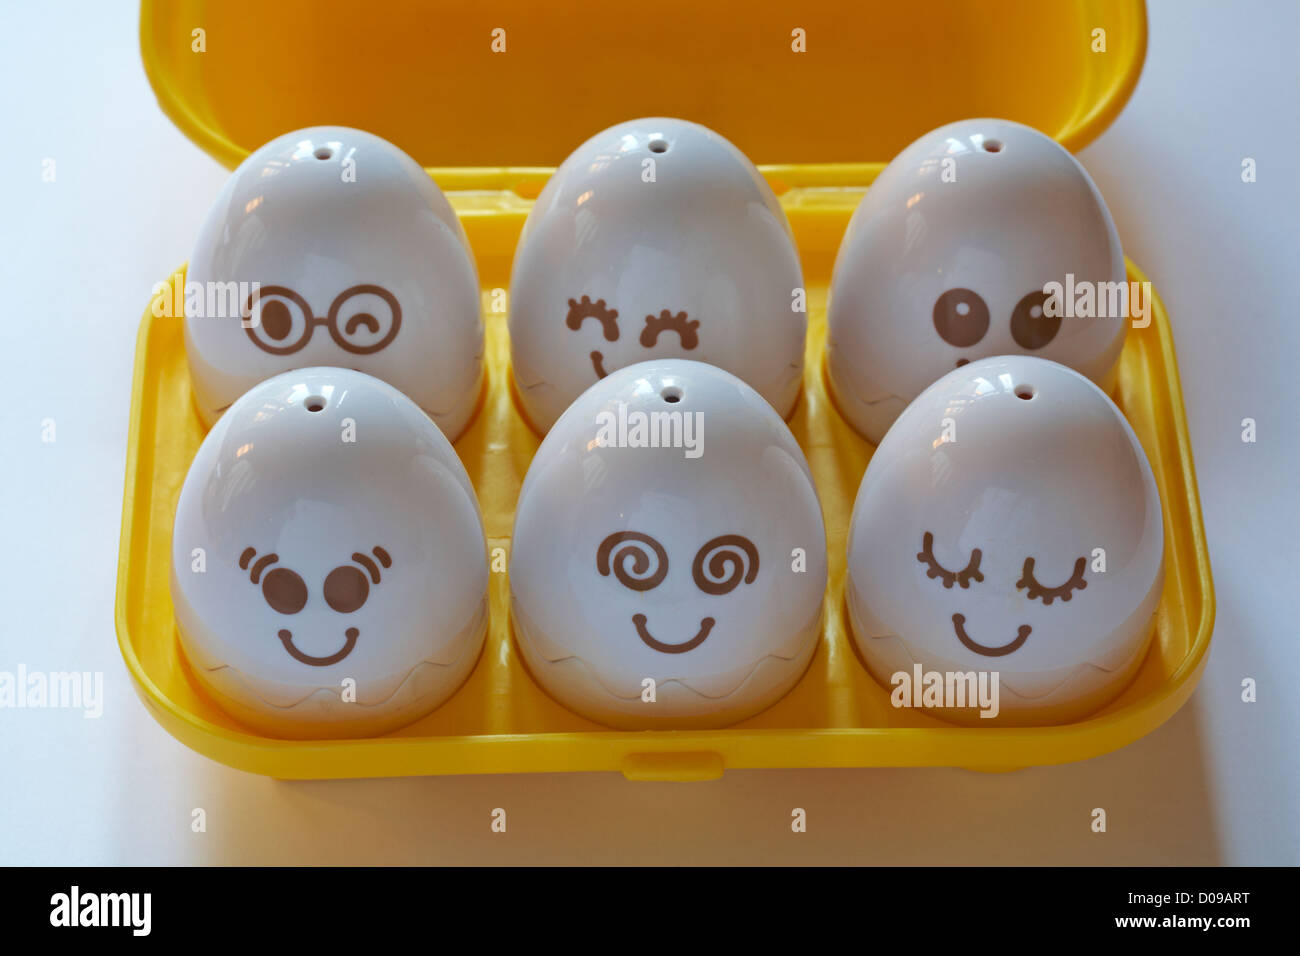 Karton Eier mit Gesichtern auf Tomy Lernen zu spielen Spielzeug-Set auf weißem Hintergrund - Tomy spielen zu lernen Eier verstecken und quietschen Stockfoto